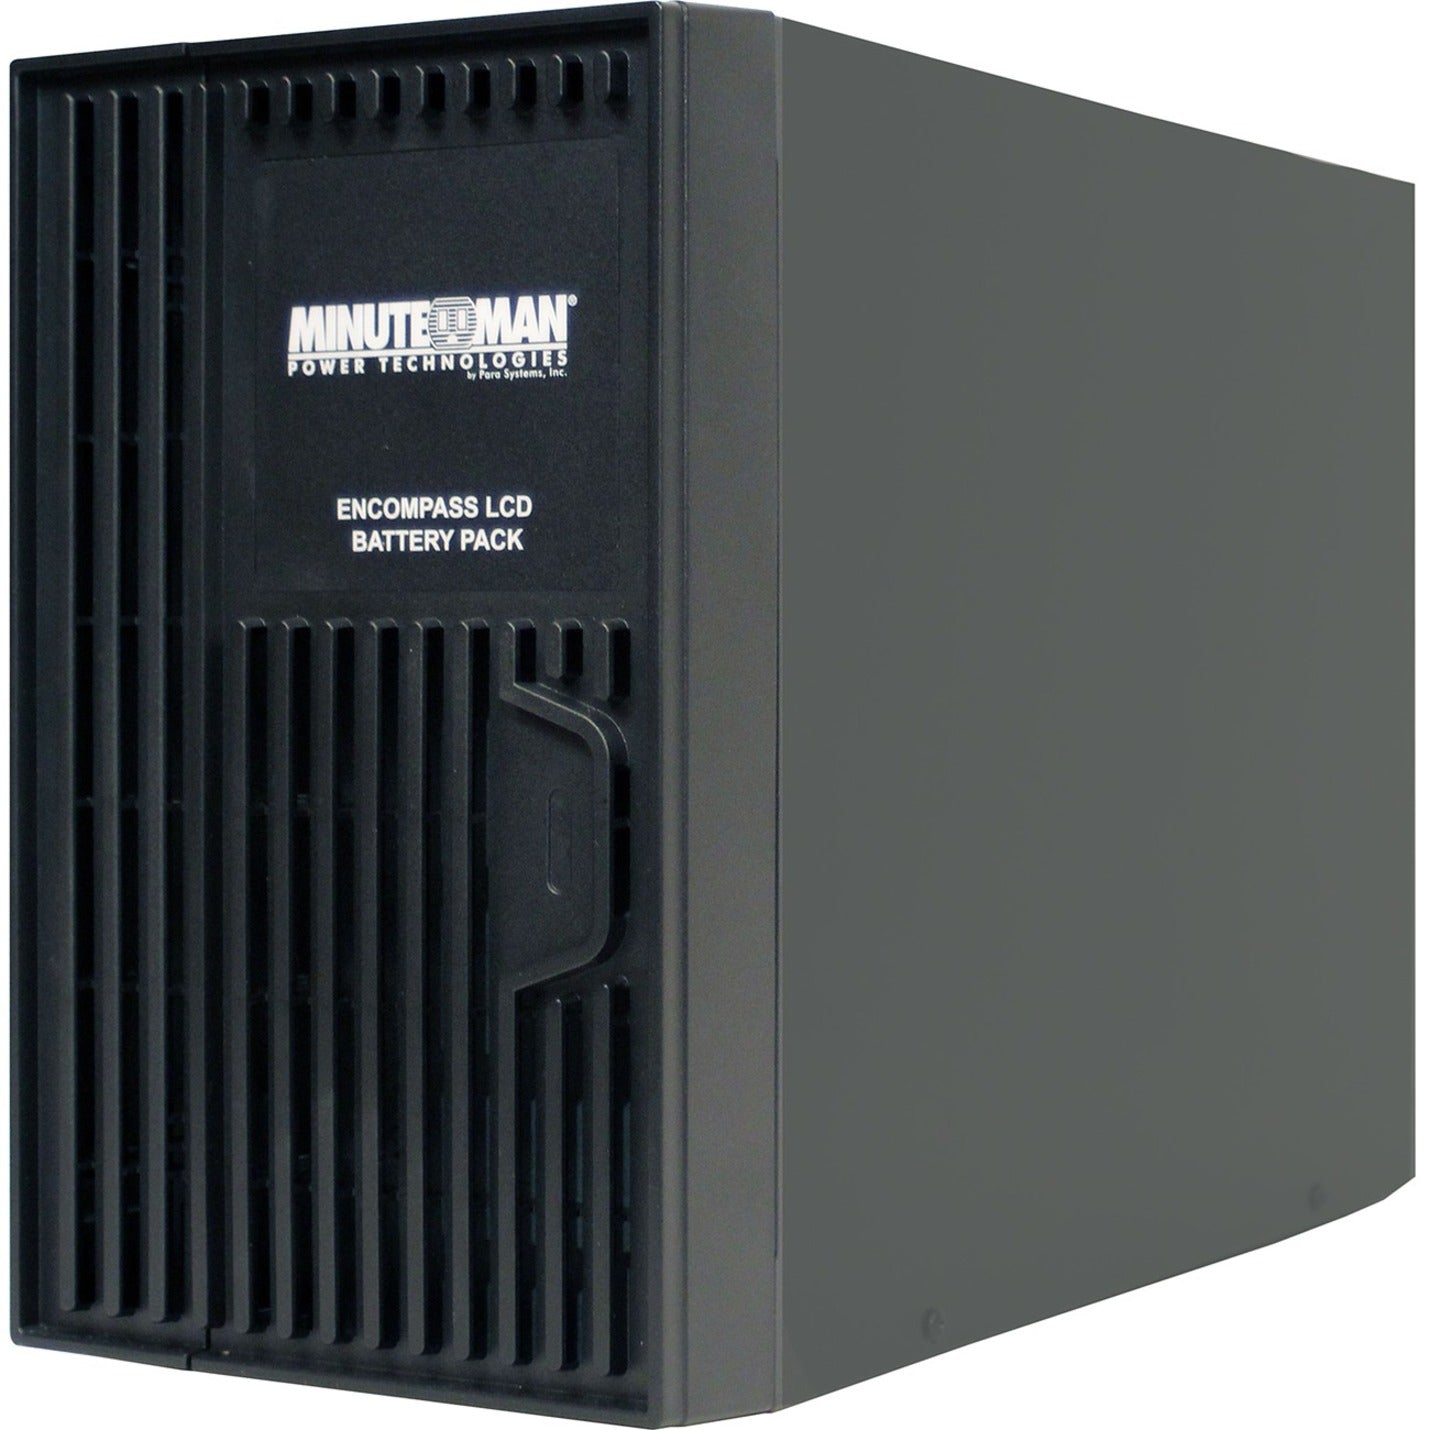 Minuteman BP48XL External Battery Pack, 48 V DC, 0.25 Hour Half Load Backup, Lead Acid